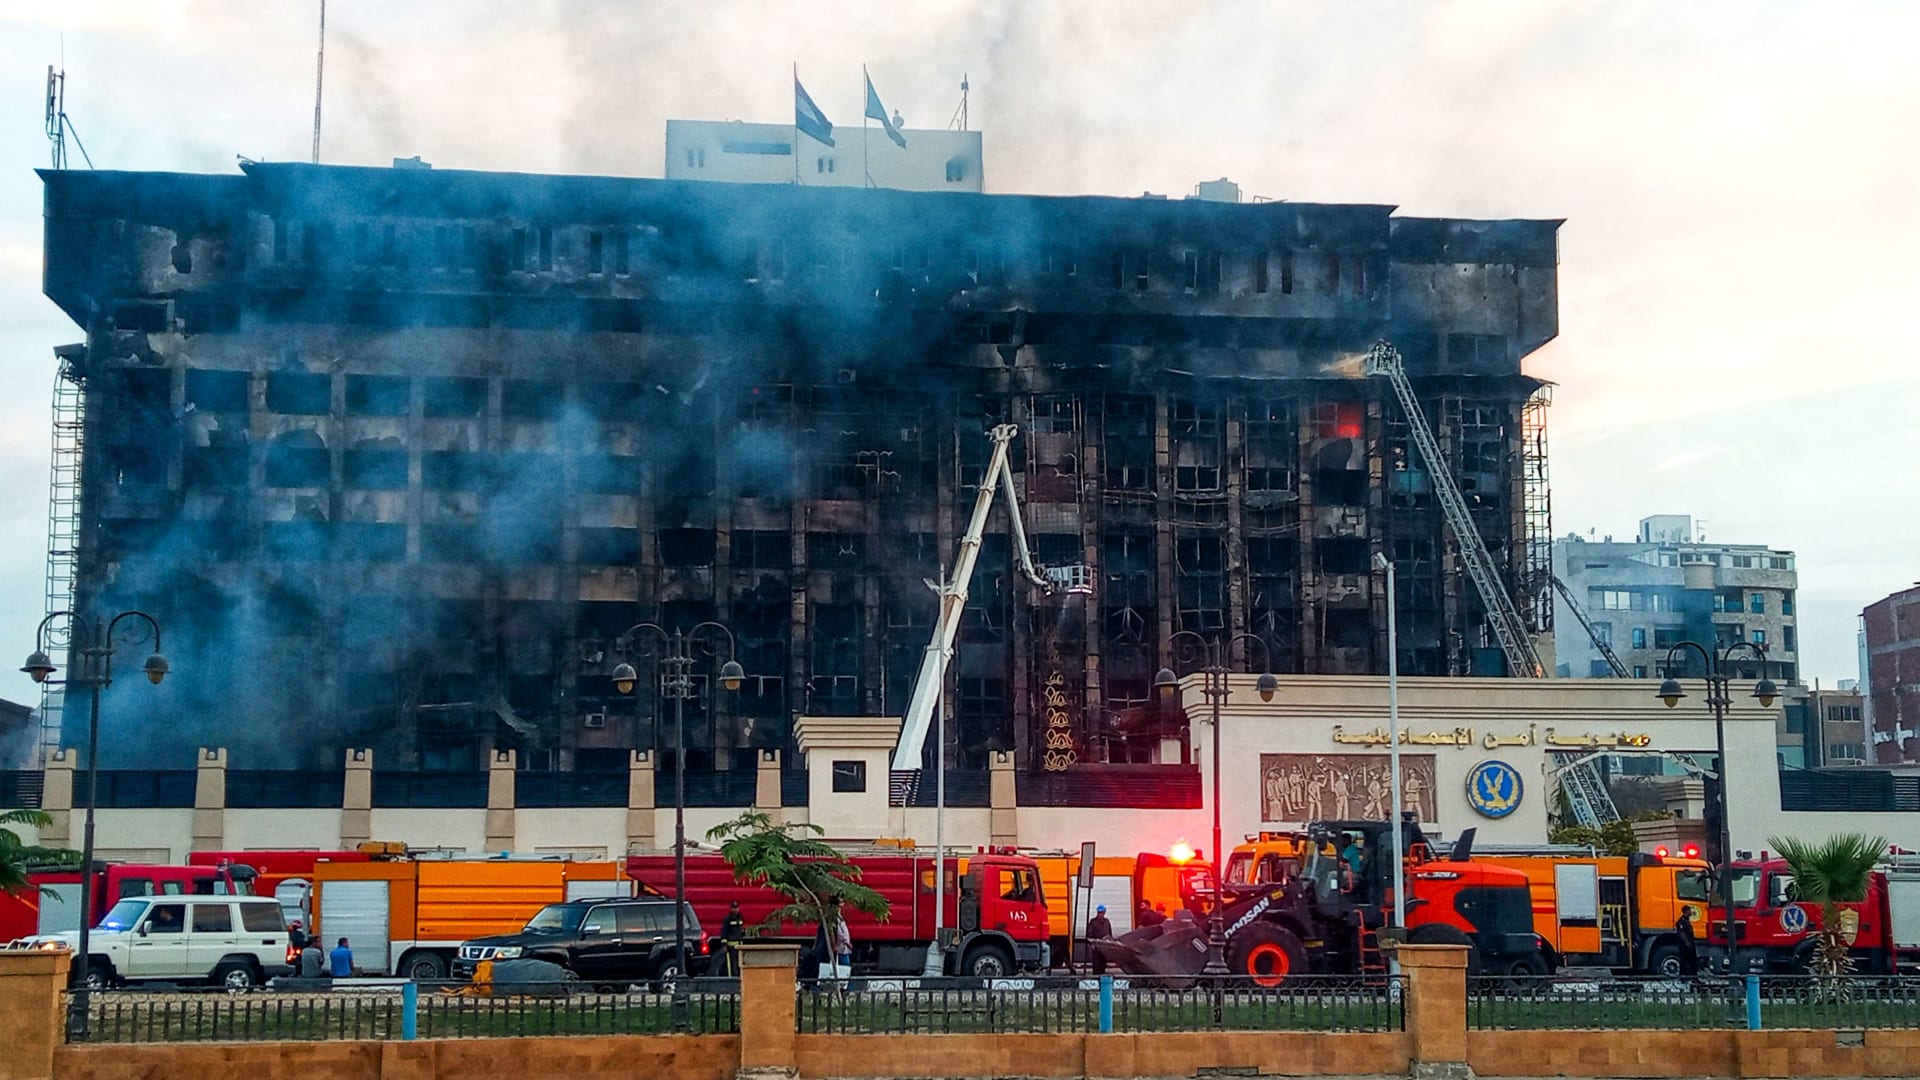 فيديو يظهر لحظة اندلاع حريق هائل بمبنى مديرية أمن الإسماعيلية في مصر